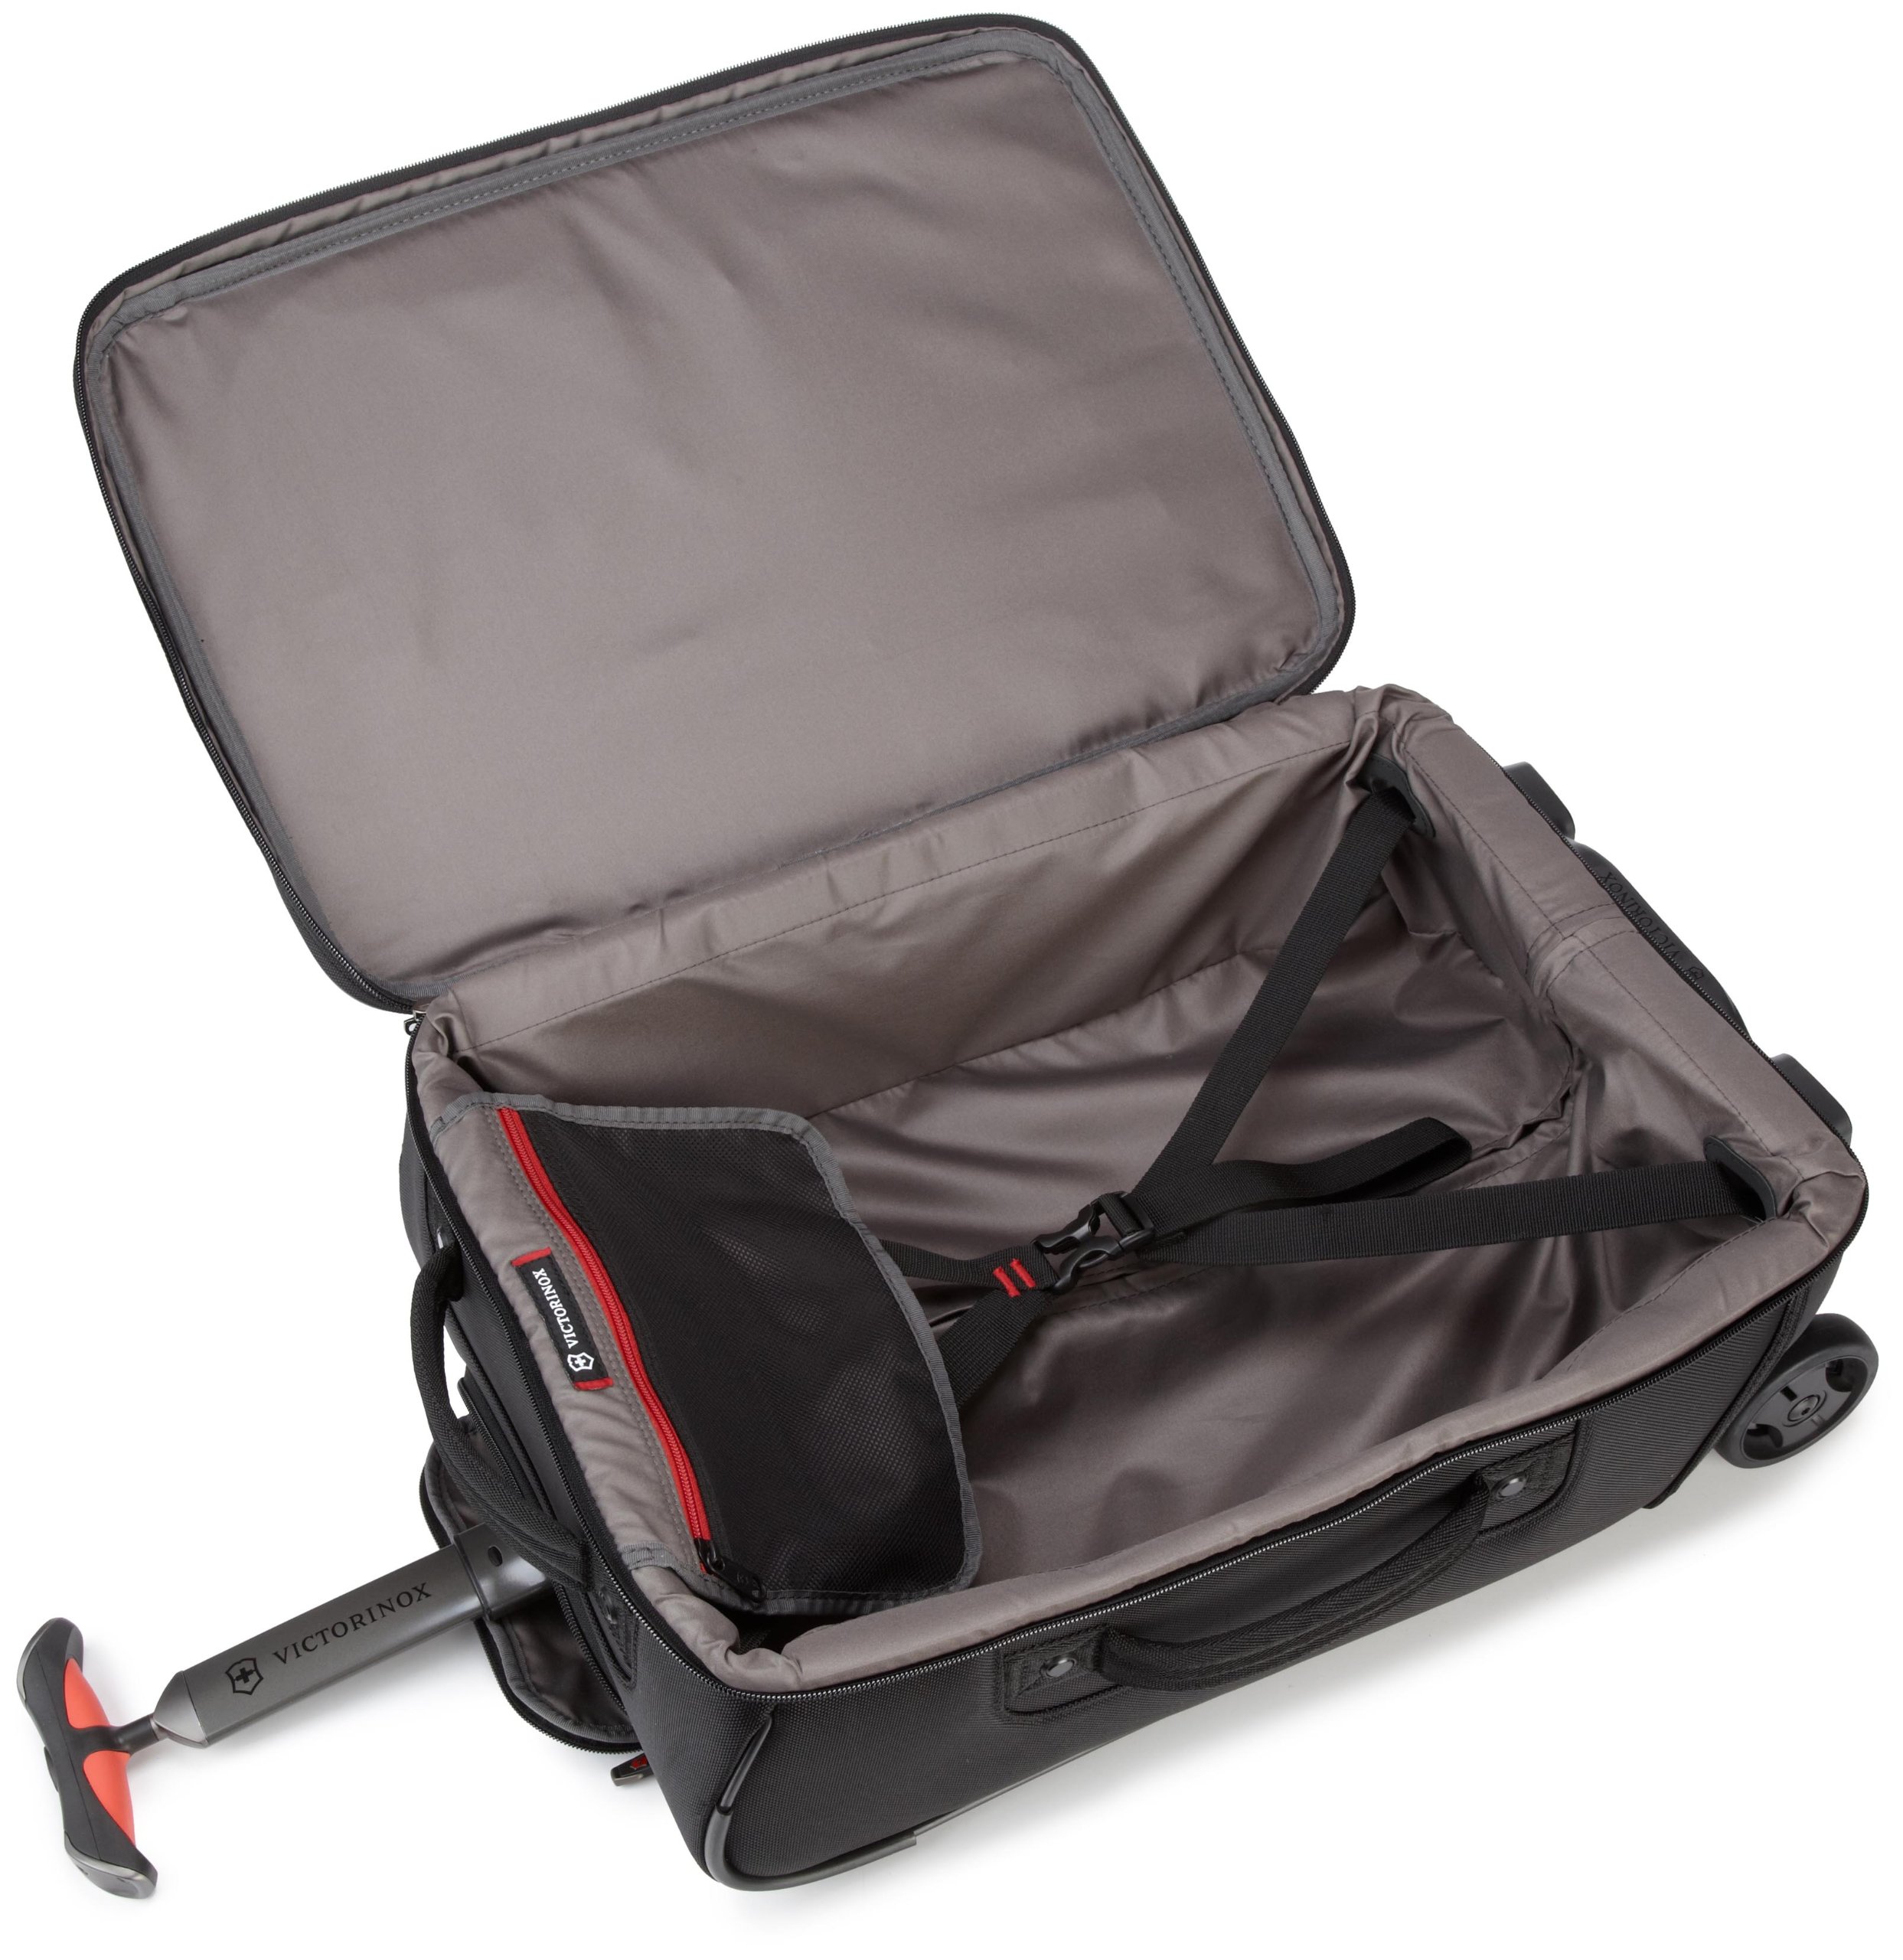 黑色款大降！維氏 Victorinox Luggage Werks Traveler 4.0 超輕隨身登機箱 $99.99